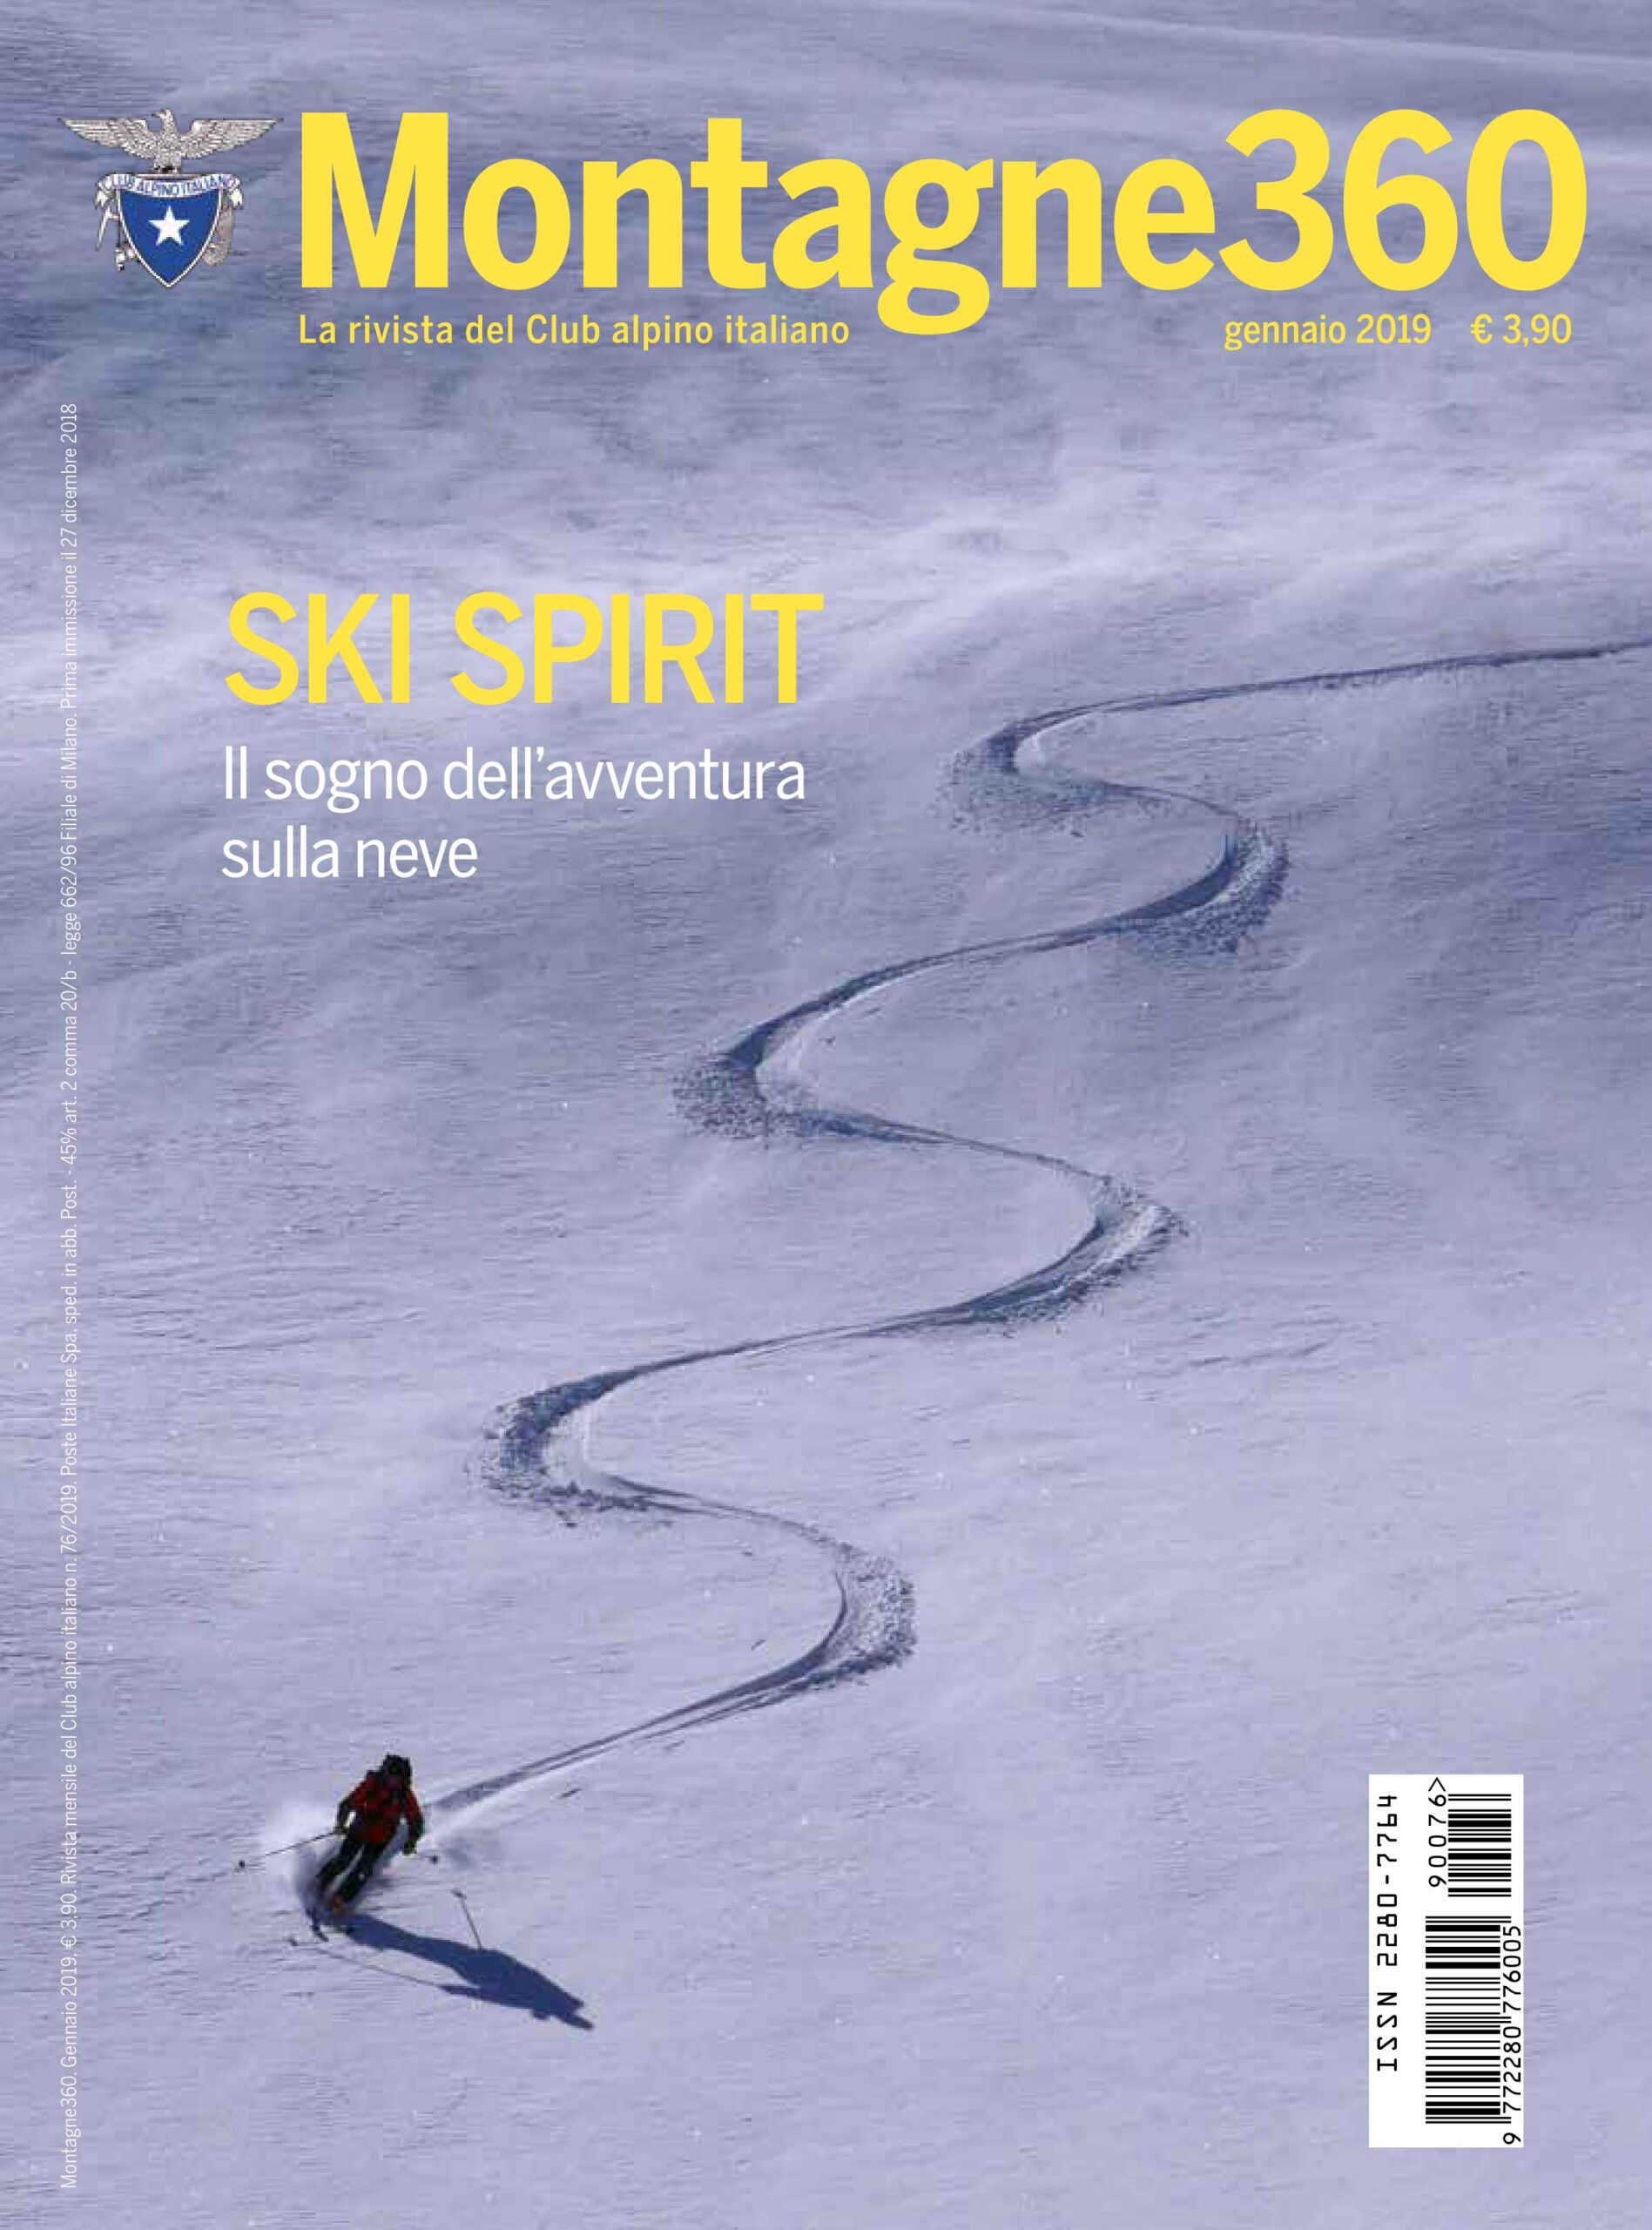 Lo ‘Ski Spirit’ e le avventure sulla neve sul nuovo Montagne360